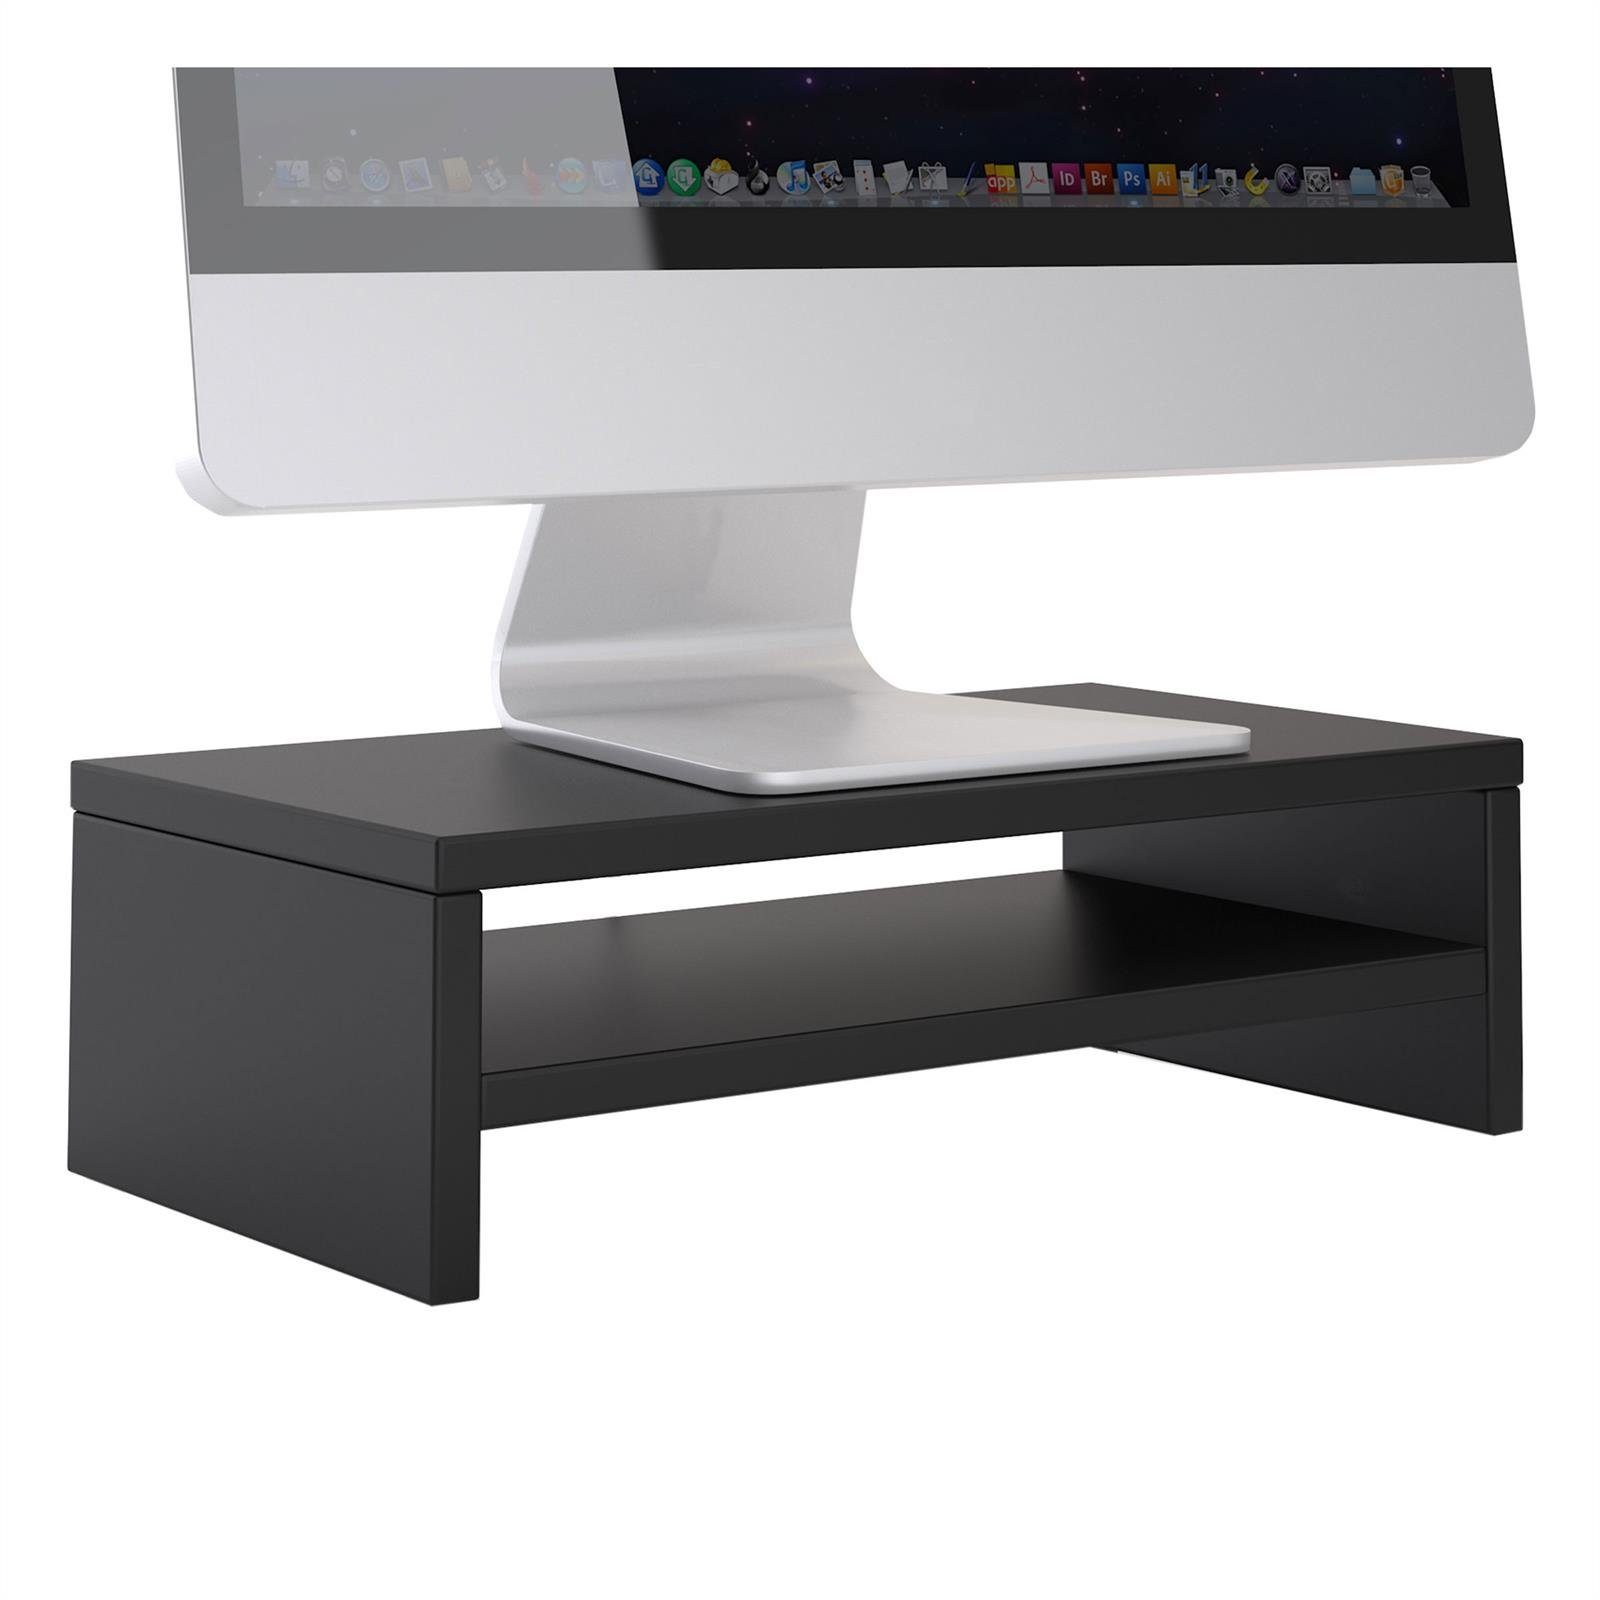 CARO-Möbel Schreibtischaufsatz SUBIDA, Bildschirmaufsatz Monitorständer Monitorerhöhung inkl. Ablagefach schwarz